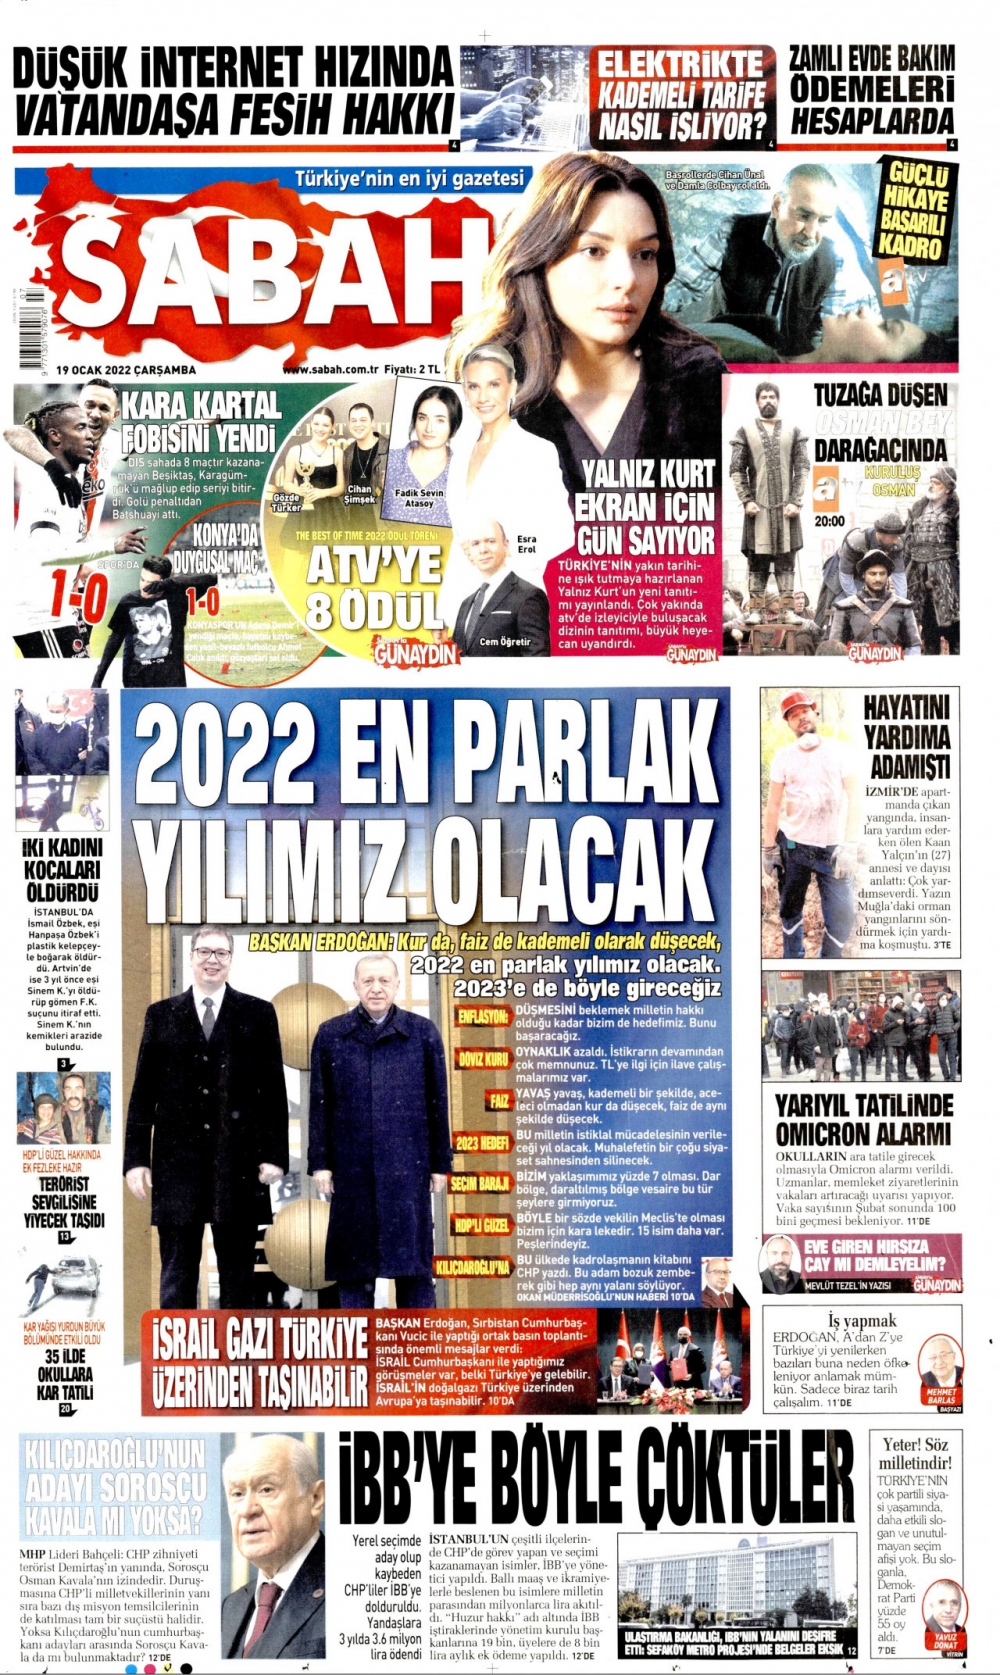 Günün Gazete Manşetleri 19 Ocak 2022 Gazeteler Ne Diyor? 1